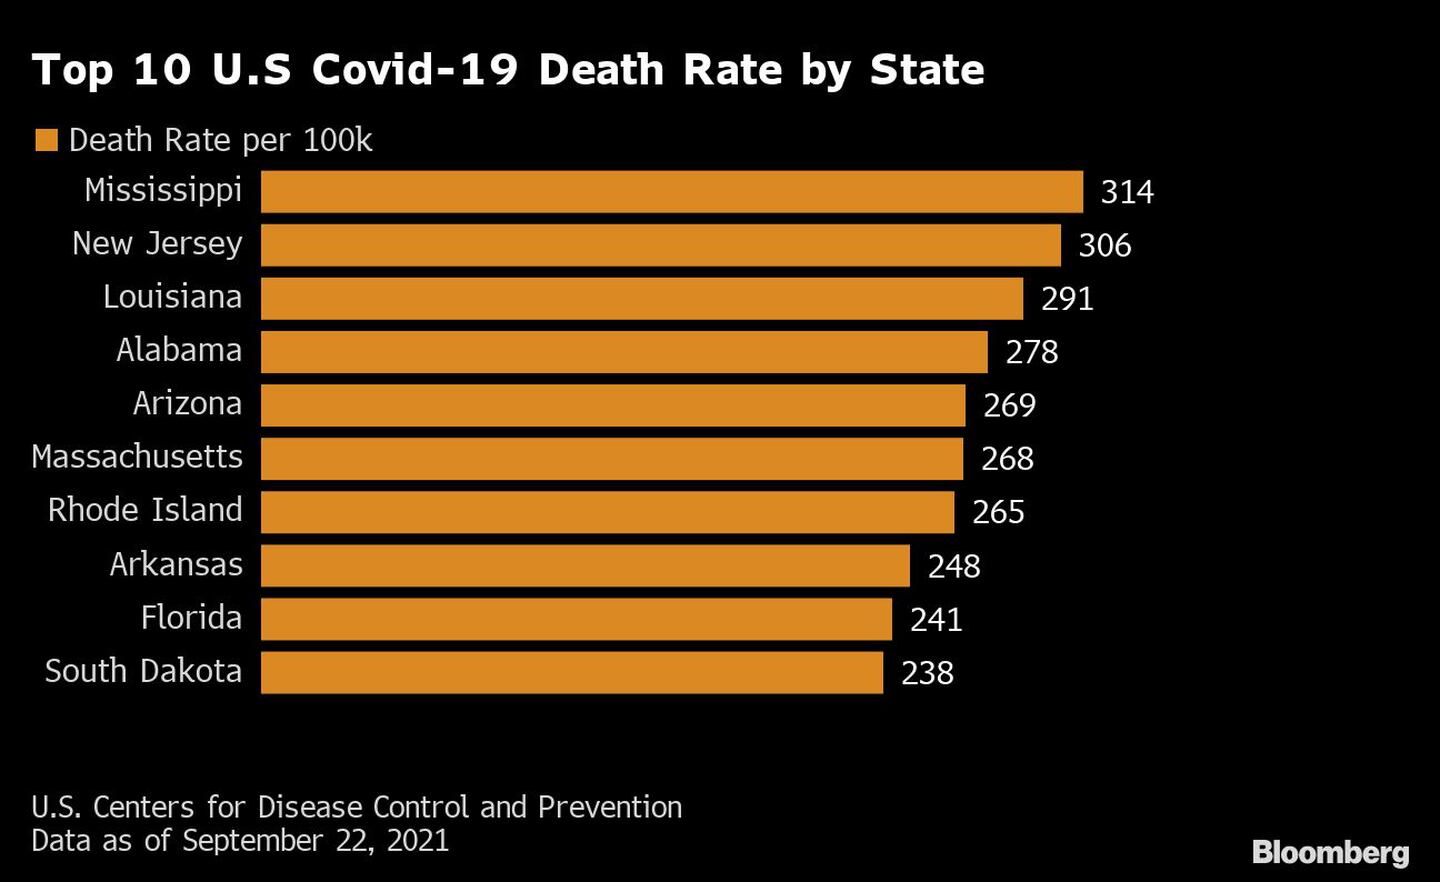 Las 10 principales tasas de mortalidad de Covid-19 en EE.UU. por estado
Naranja: Tasa de mortalidad por 100kdfd